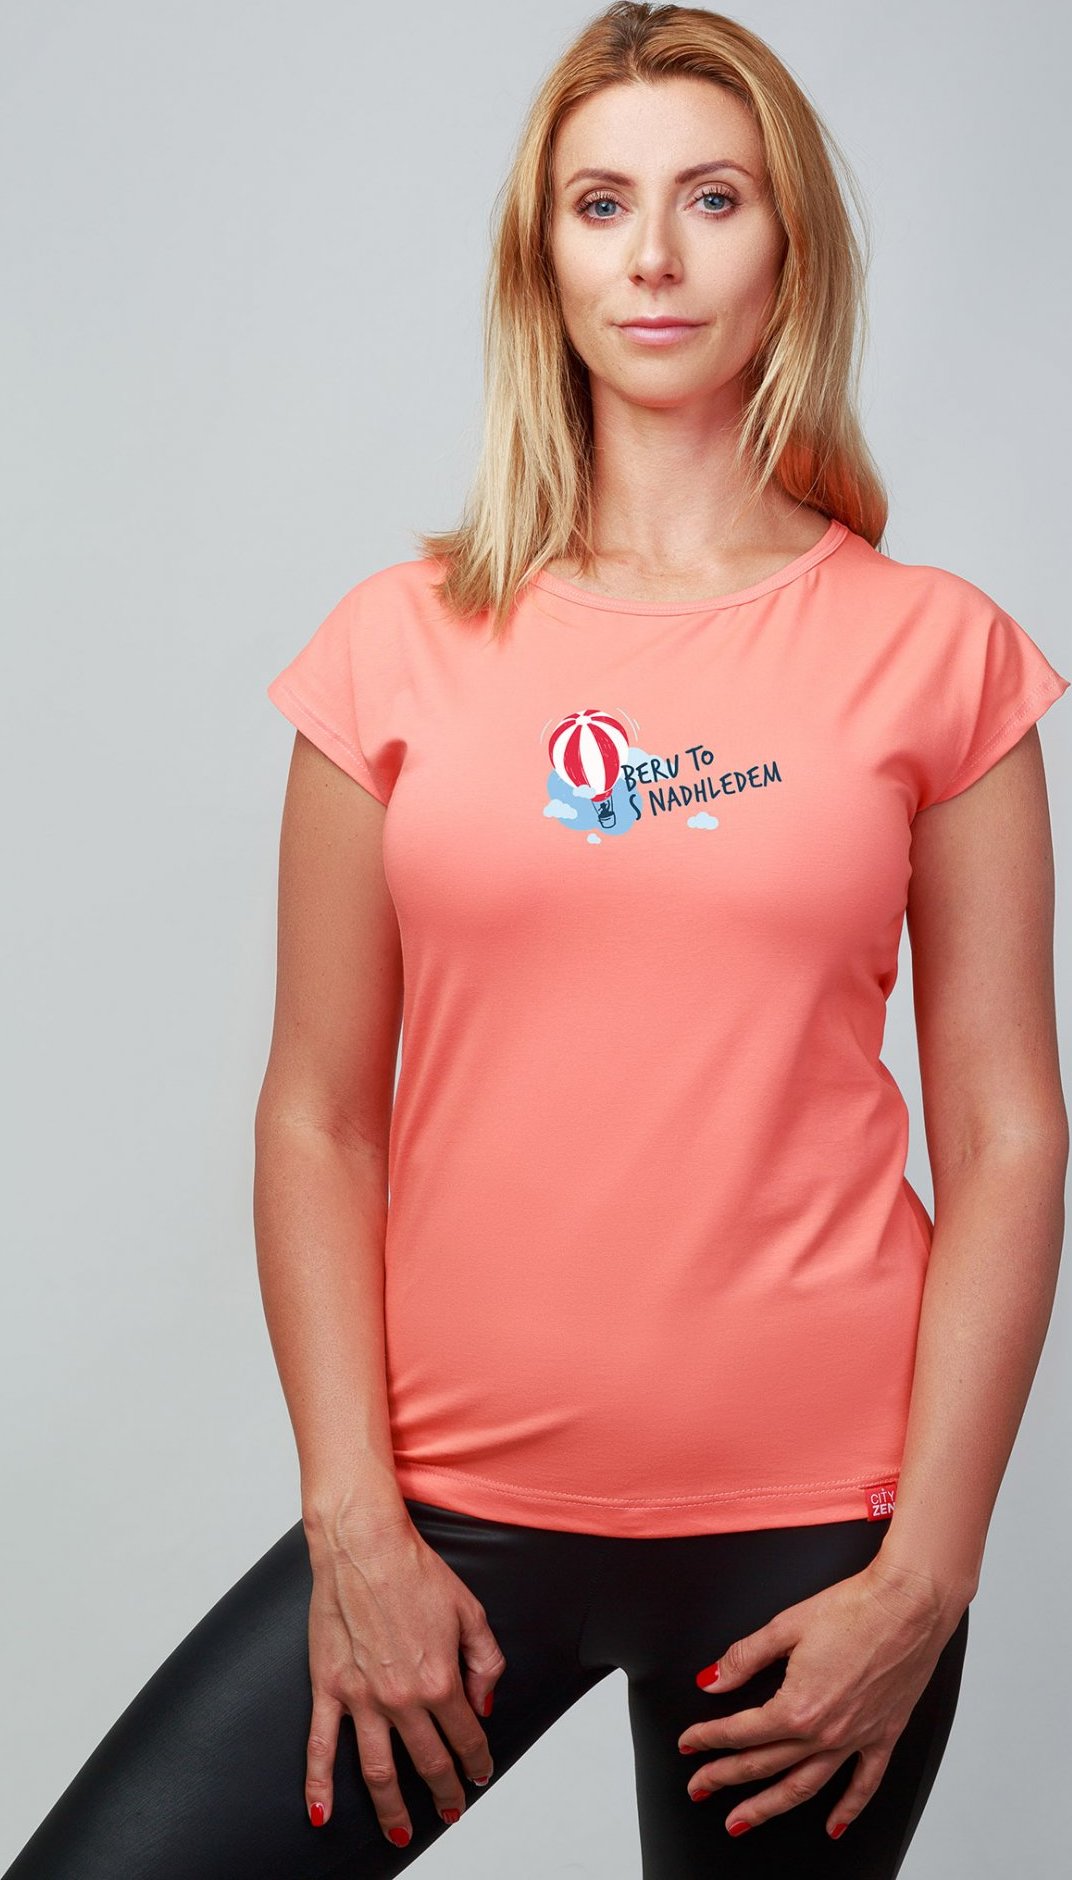 Dámské bavlněné triko CITYZEN růžové Beru to s nadhledem Velikost: S/38